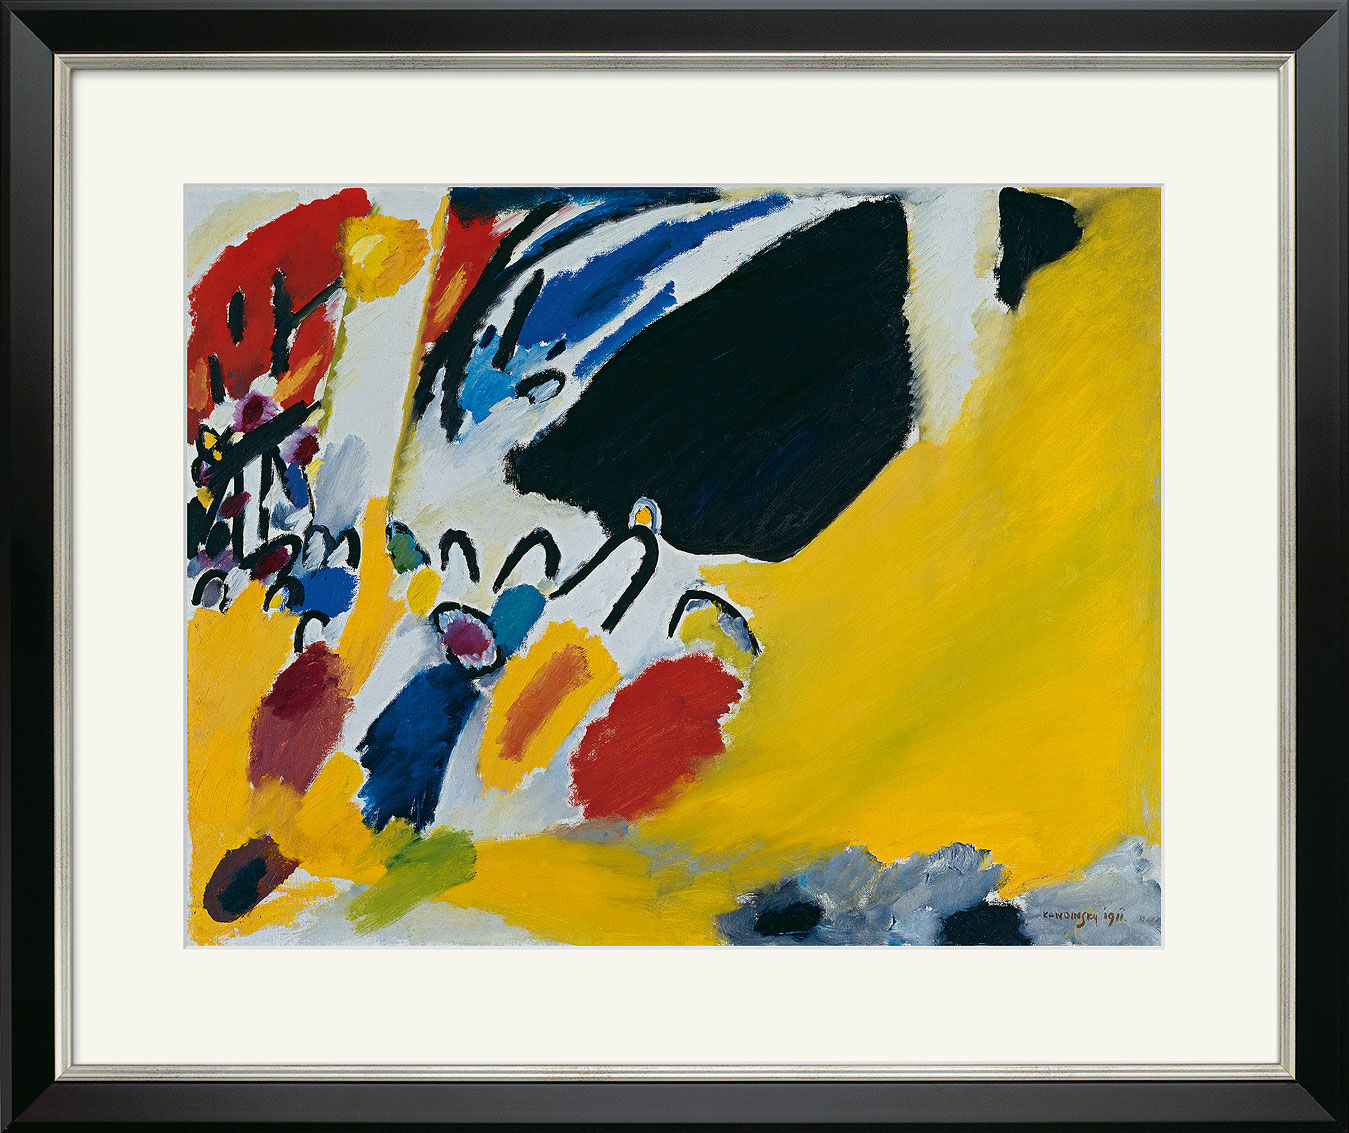 Billede "Impressions III (Concert)" (1911), indrammet von Wassily Kandinsky